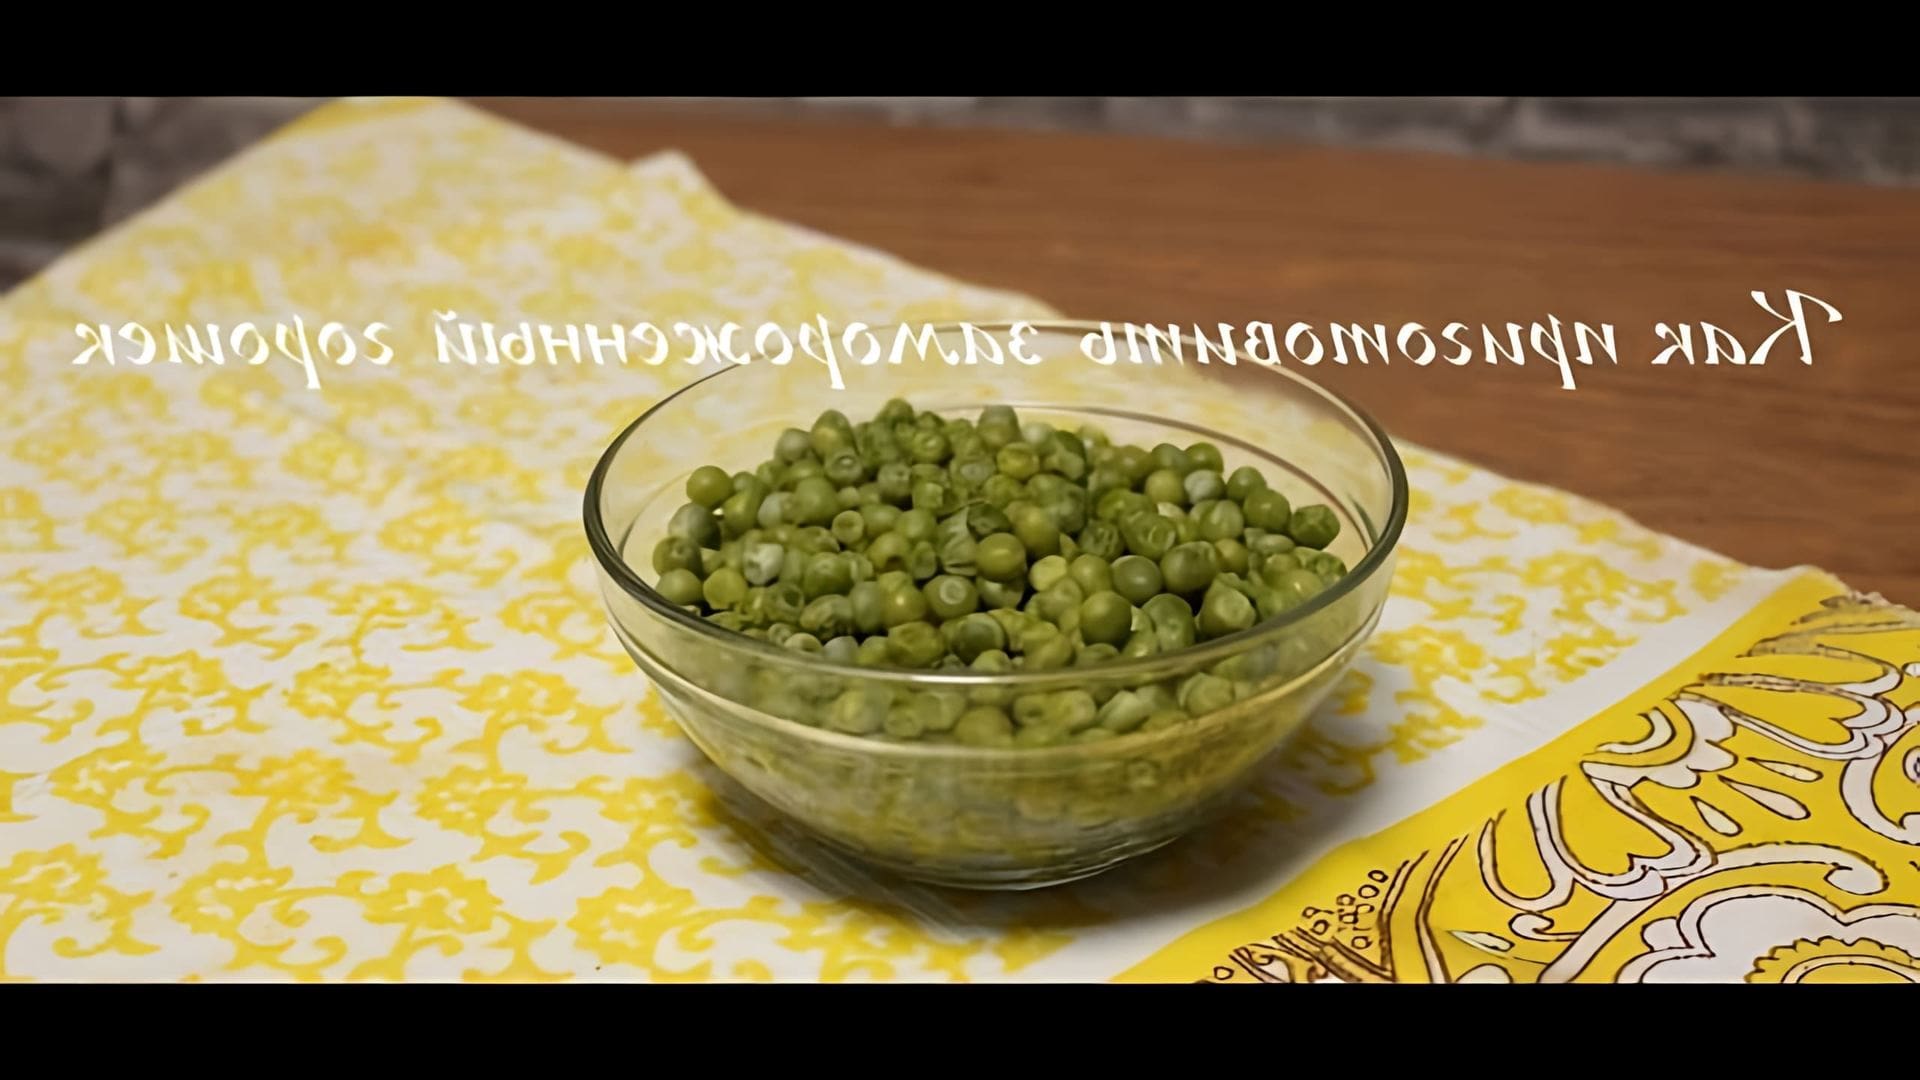 В этом видео демонстрируется, как приготовить зеленый замороженный горошек для салатов, который получается как консервированный